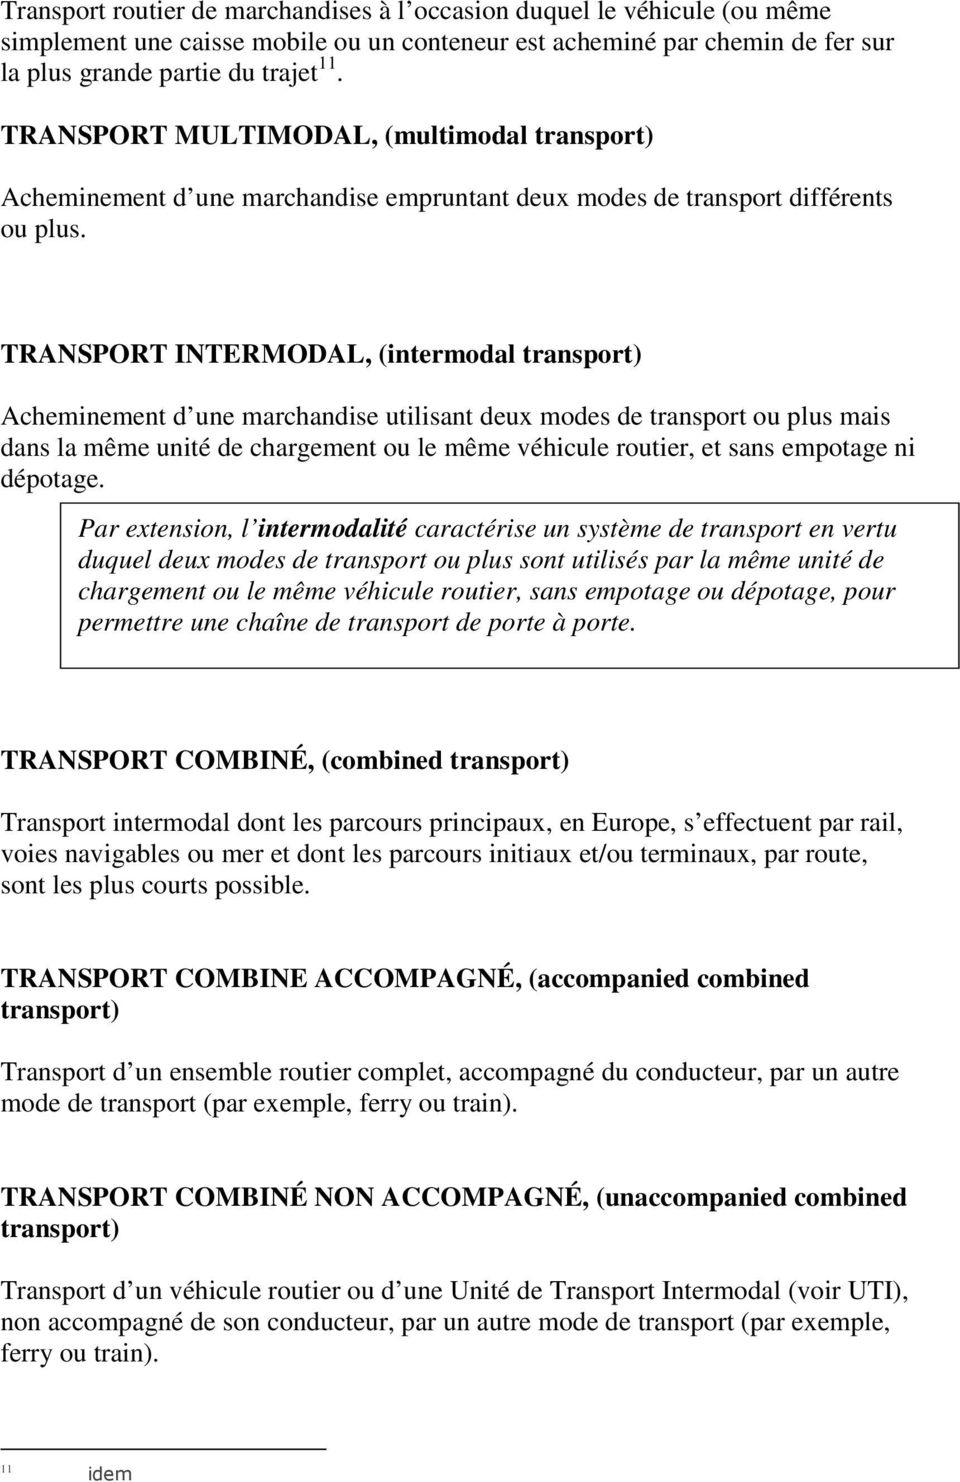 TRANSPORT INTERMODAL, (intermodal transport) Acheminement d une marchandise utilisant deux modes de transport ou plus mais dans la même unité de chargement ou le même véhicule routier, et sans